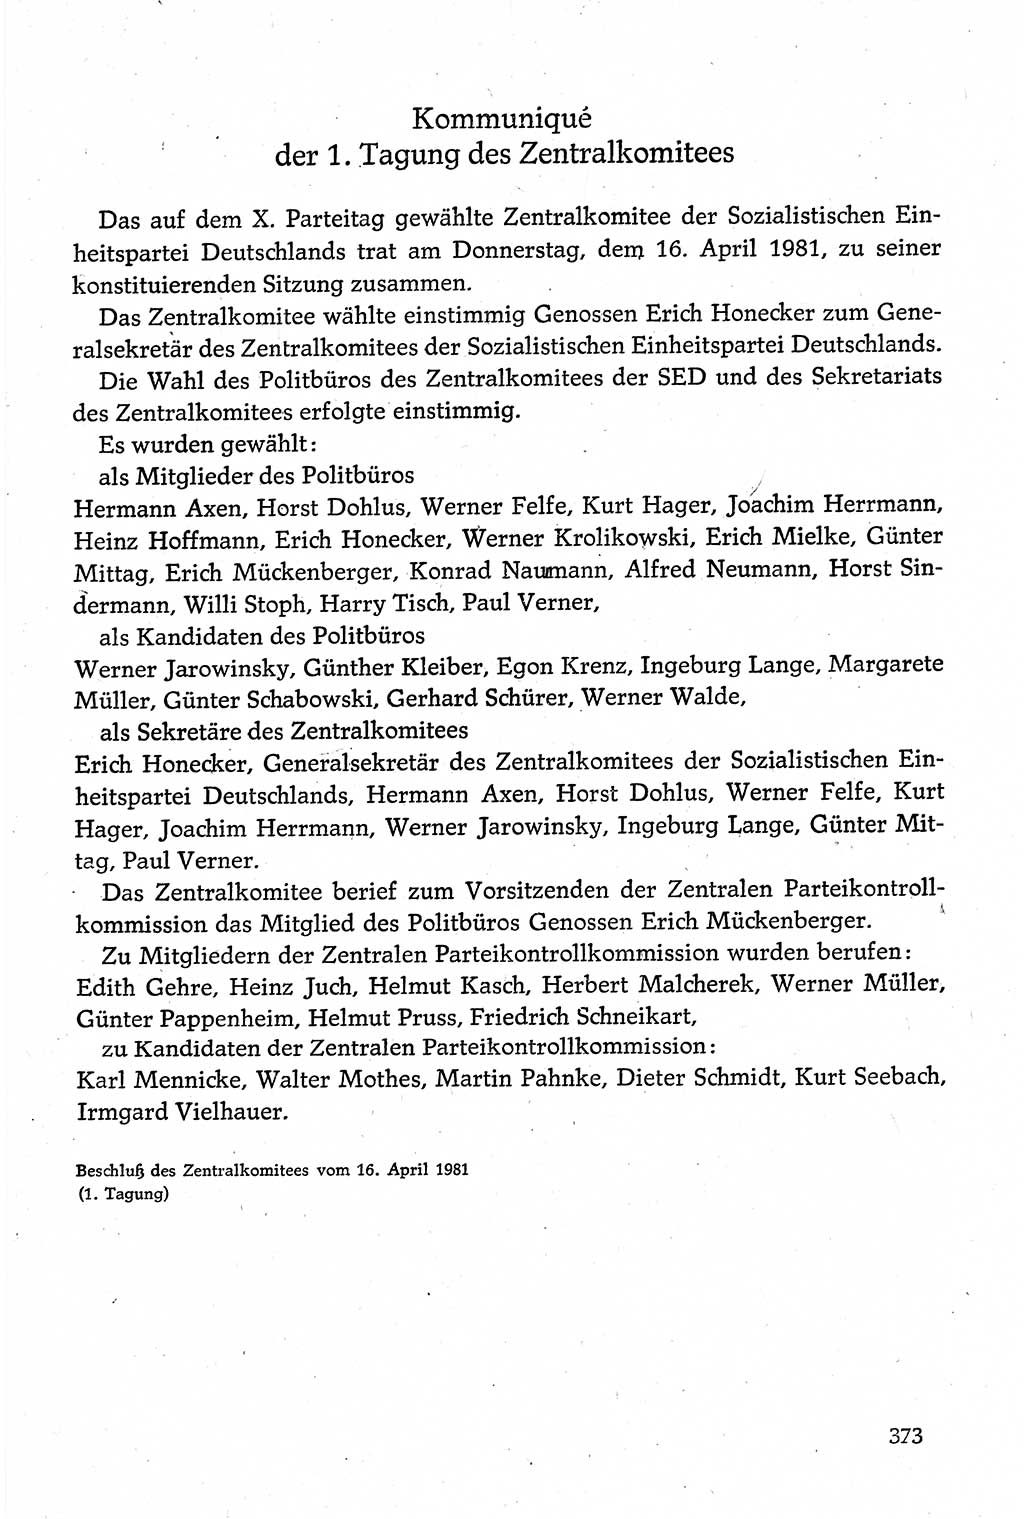 Dokumente der Sozialistischen Einheitspartei Deutschlands (SED) [Deutsche Demokratische Republik (DDR)] 1980-1981, Seite 373 (Dok. SED DDR 1980-1981, S. 373)